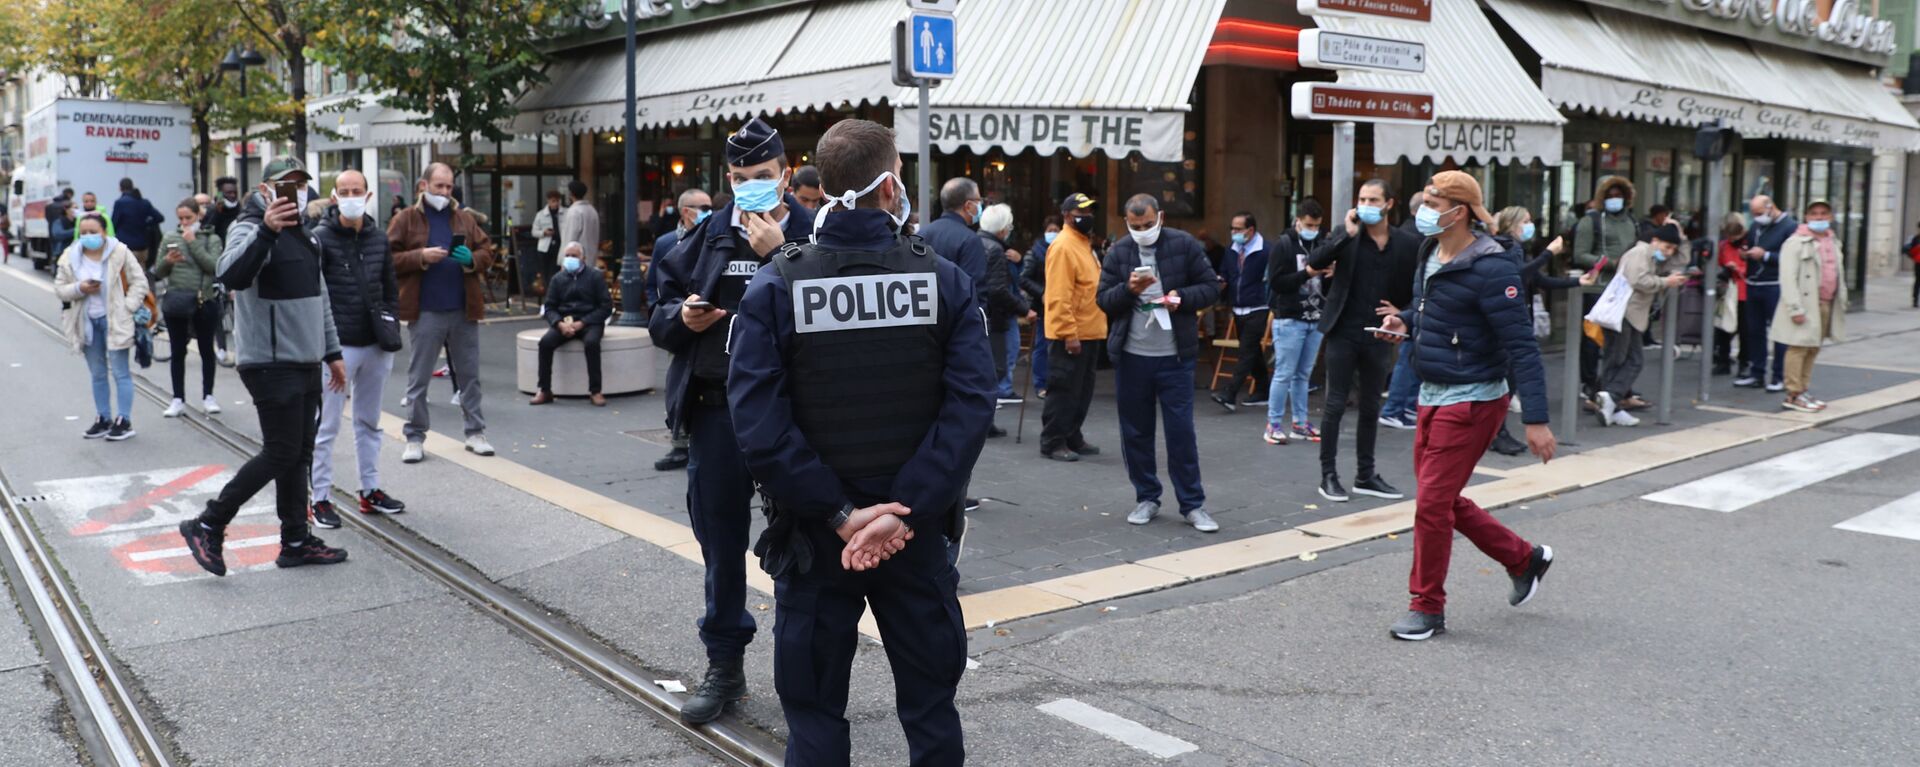  الشرطة الفرنسية في موقع هجوم طعن بالسكين أمام كاتدرائية نوتردام في مدينة نيس، فرنسا 29 أكتوبر 2020 - سبوتنيك عربي, 1920, 24.07.2021